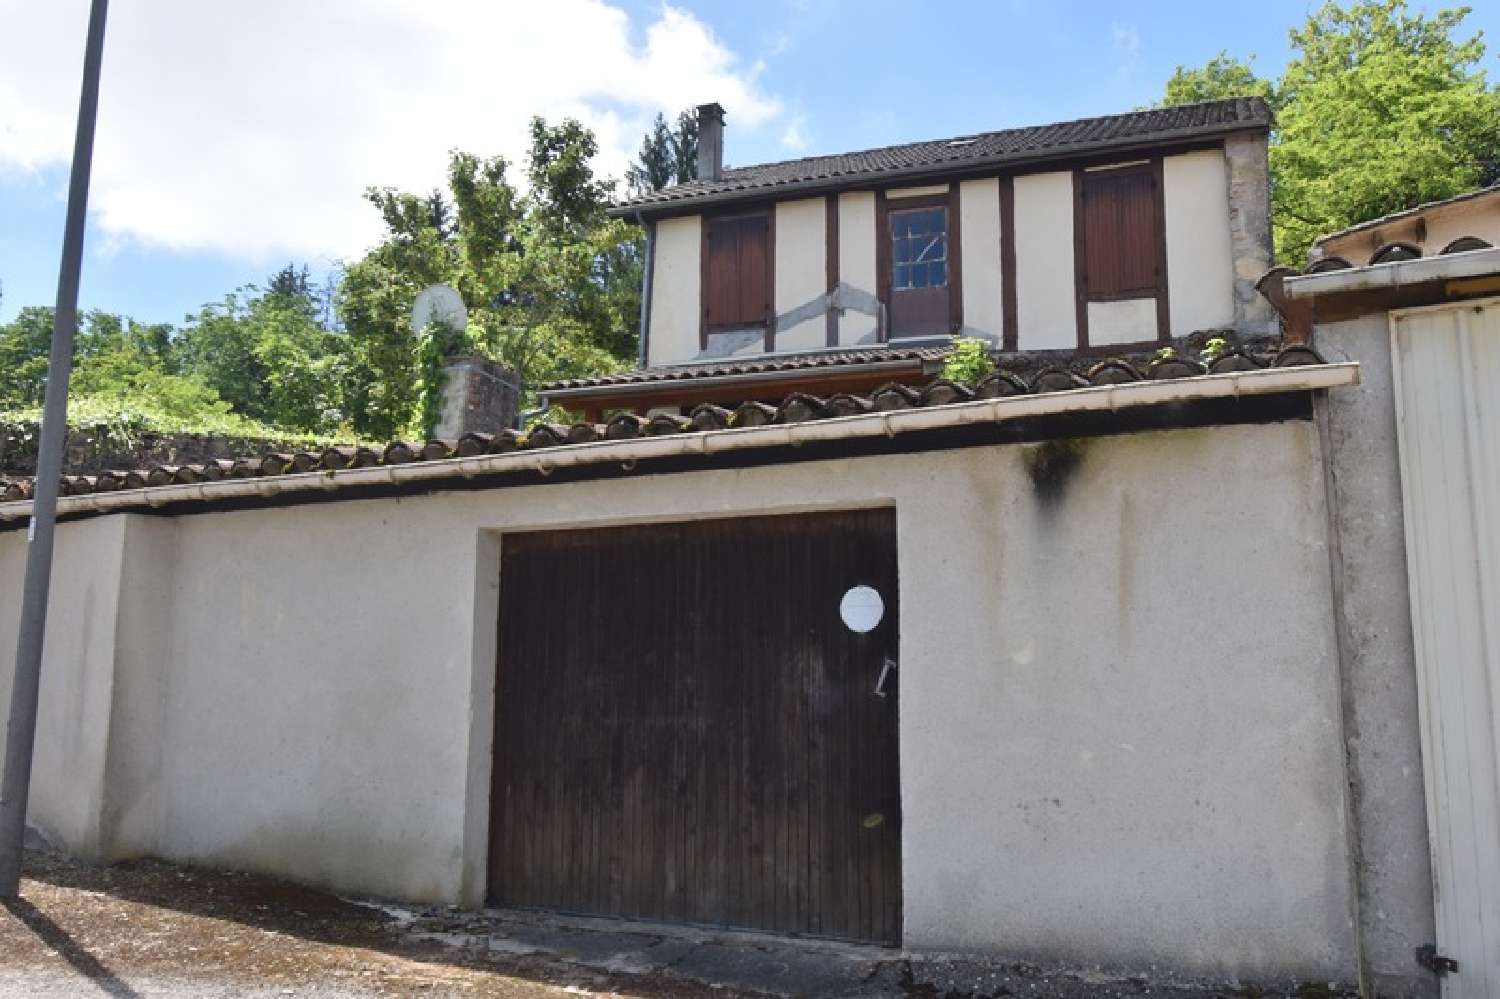  for sale village house Tournon-d'Agenais Lot-et-Garonne 3